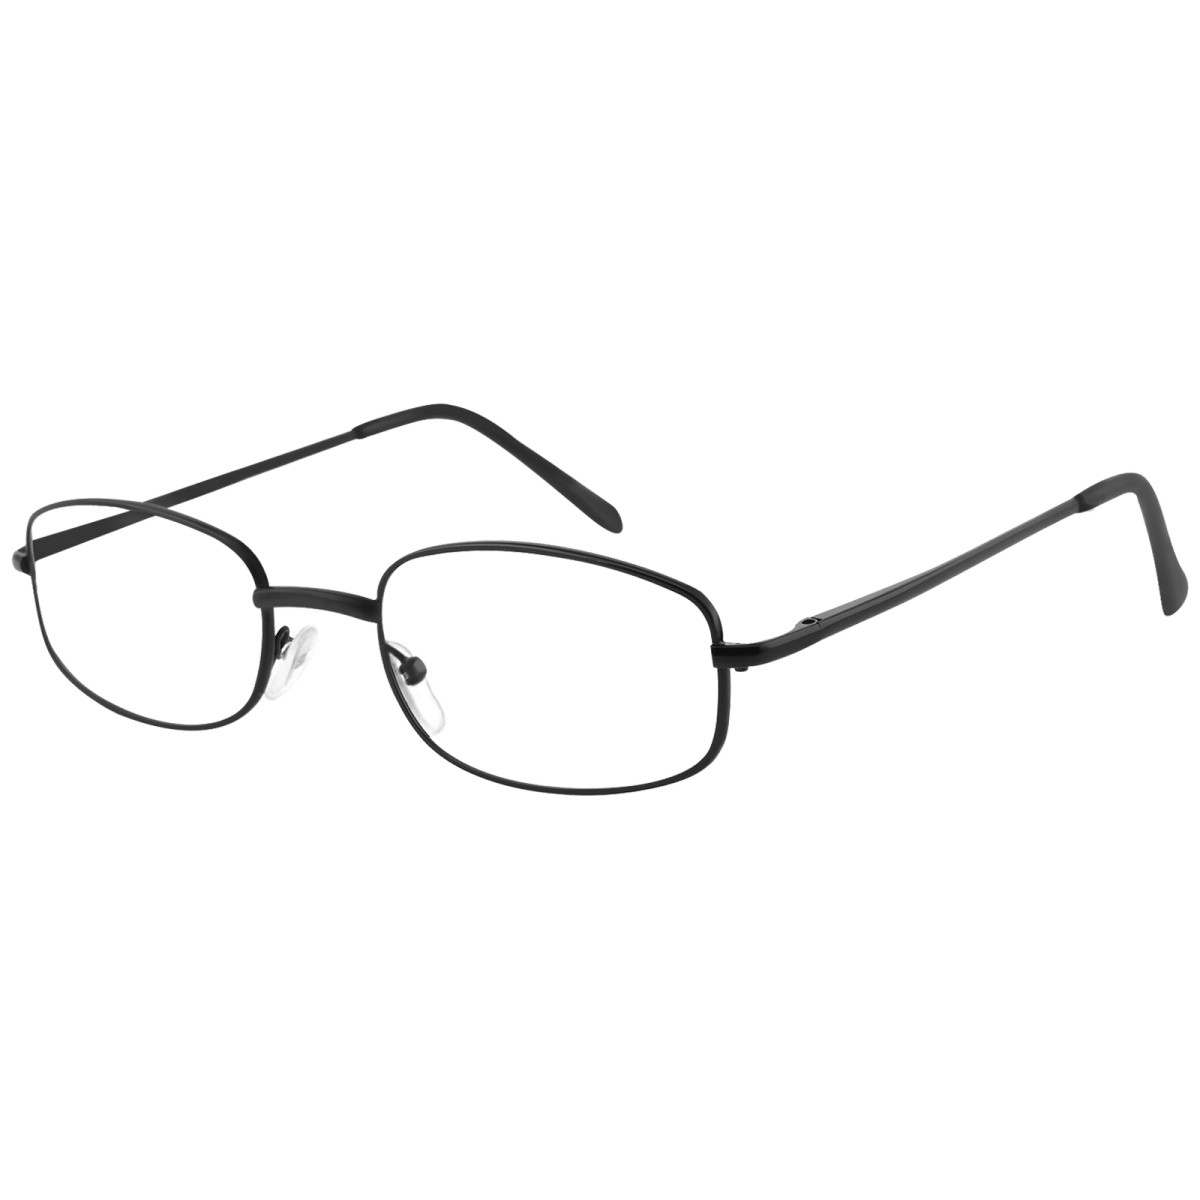 Callpidae - Oval Black Reading Glasses for Men & Women